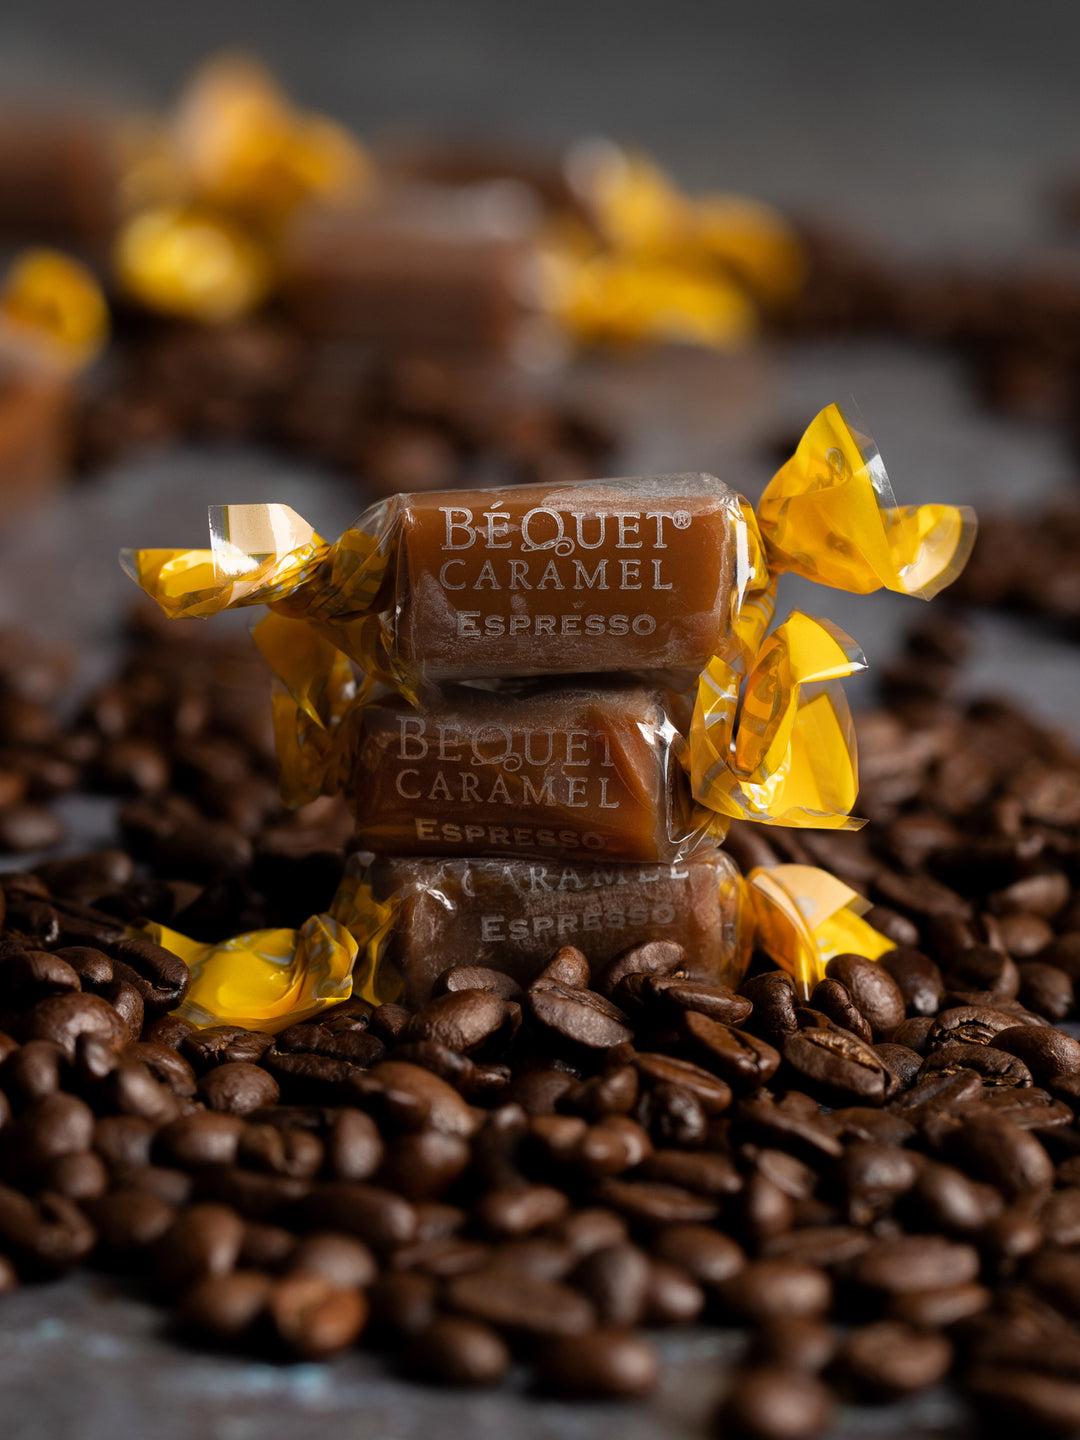 espresso bequet caramel#caramel-variety_espresso